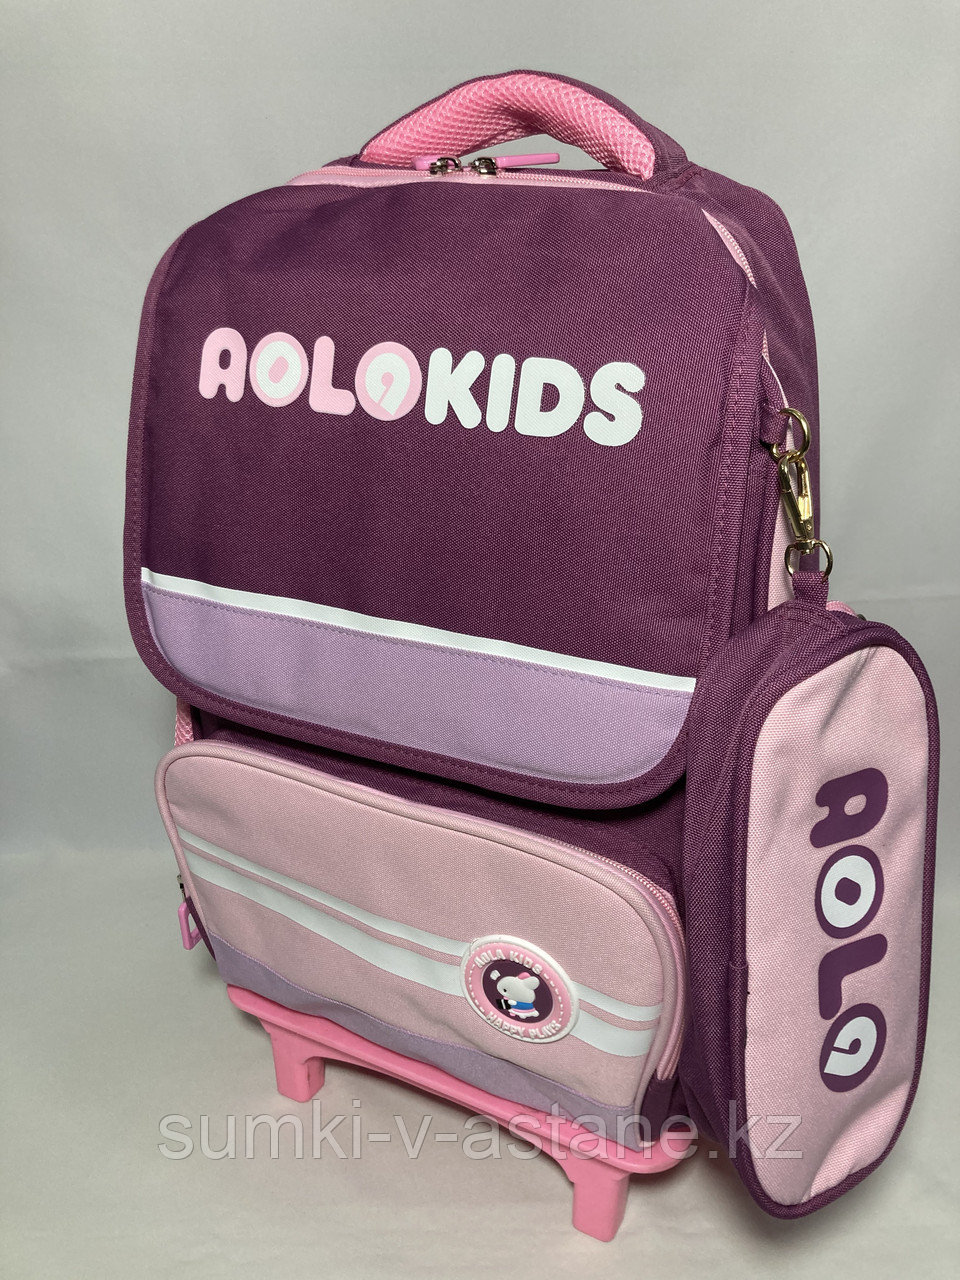 Школьный рюкзак на колёсах, для девочек.